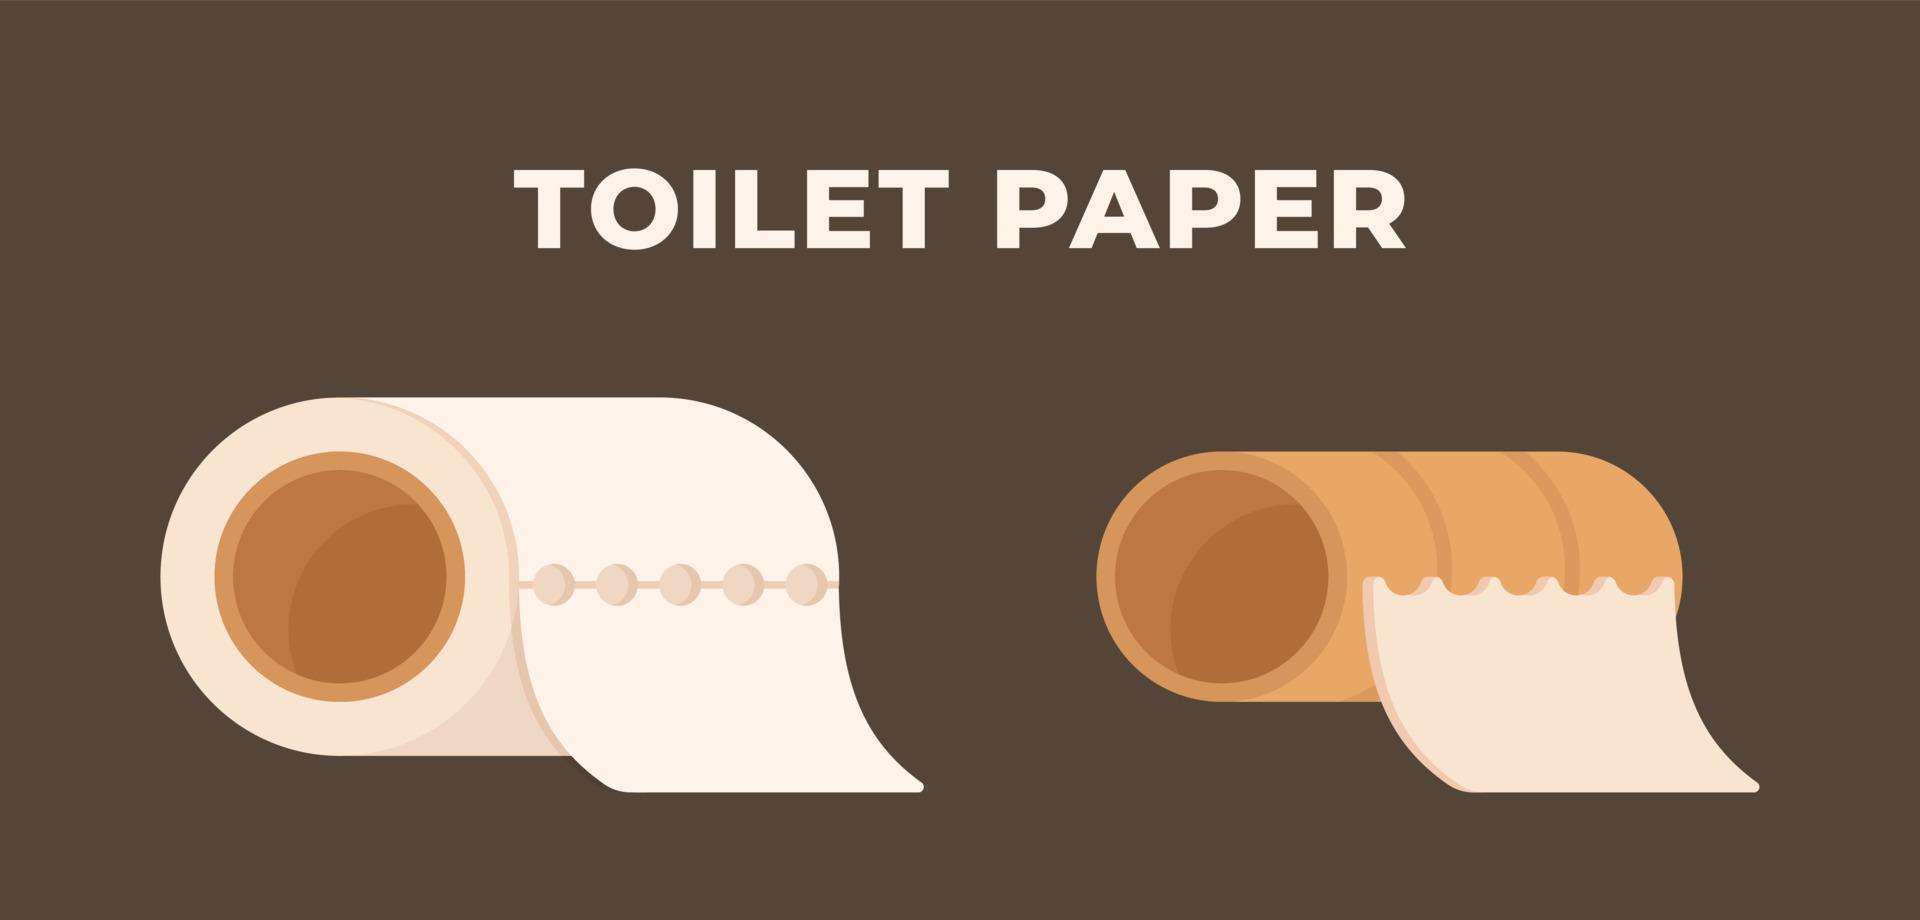 vektor illustration av toalettpapper isolerad på en brun bakgrund. städning på toaletten.